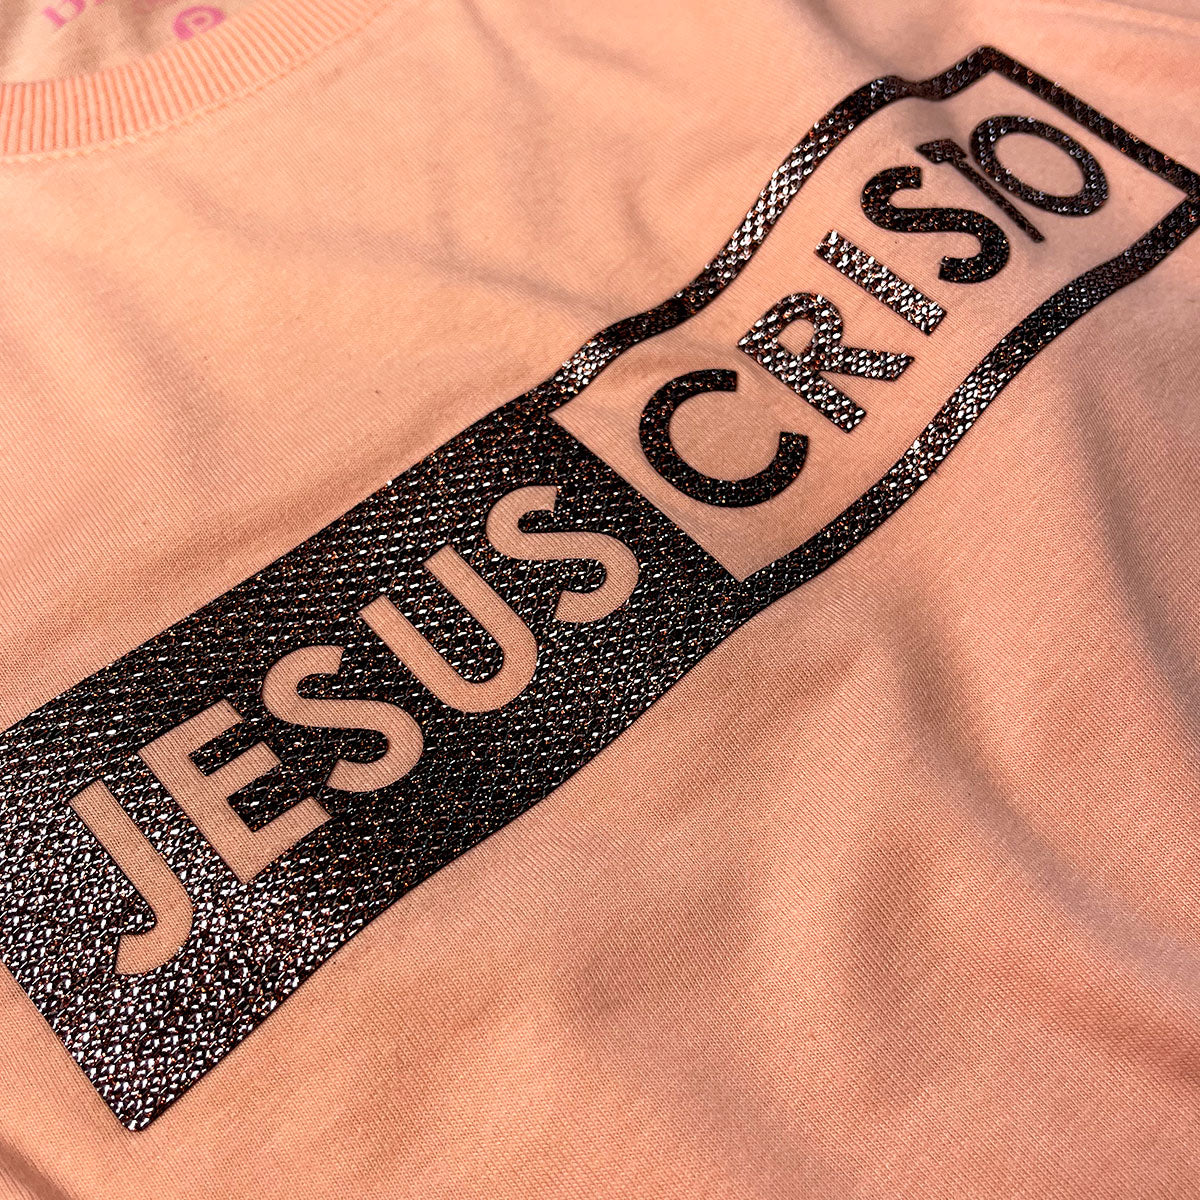 Camiseta Feminina Salmão Jesus Cristo Glitter